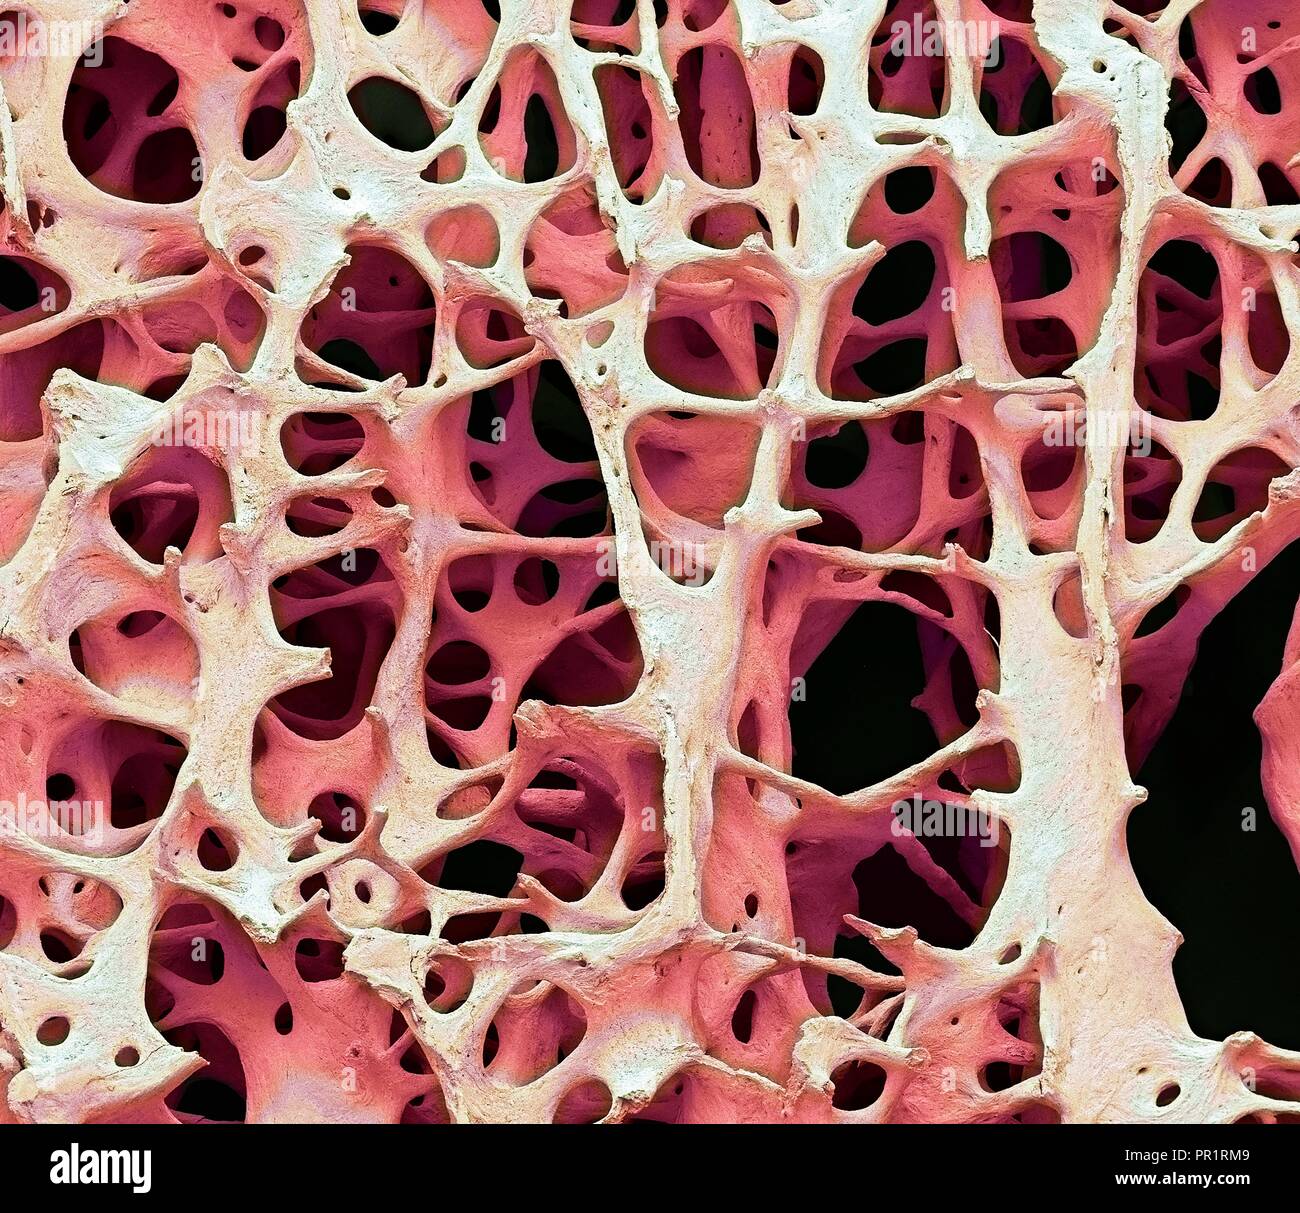 Il tessuto osseo. Color scanning electron microfotografia (SEM) di spugnoso umano (spugnosa ossea). Il tessuto osseo può essere sia (corticale compatta) spugnoso o. L'osso corticale di solito rende l'esterno dell'osso, mentre l'osso spugnoso si trova all'interno. Osso spongioso è caratterizzato da una disposizione a nido d'ape, comprendente una rete di trabecole (a forma di asta di tessuto). Queste strutture forniscono sostegno e forza per l'osso. Gli spazi all'interno di questo tessuto contengono midollo osseo (non visibile), un sangue di sostanza di formazione. Ingrandimento: x13 quando stampata 10cm di larghezza. Foto Stock